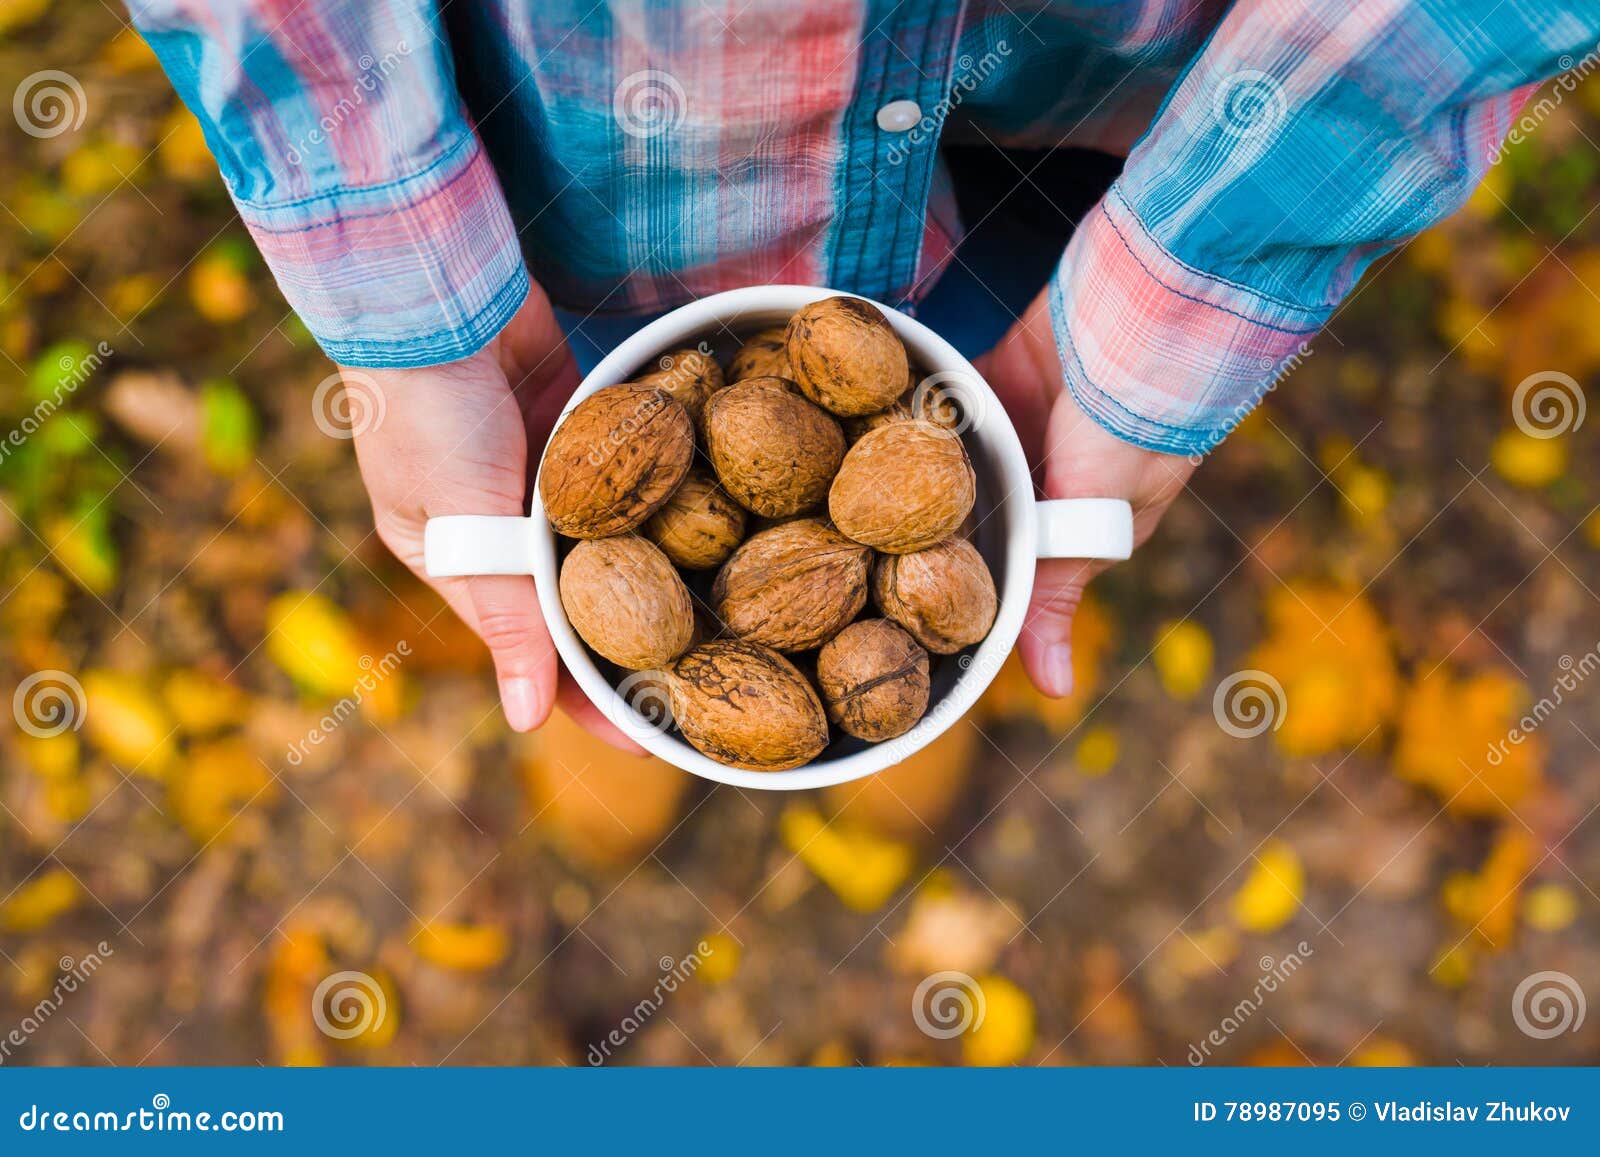 Polya nuts инстаграм. Девушка держит в руках орехи. Девушка держит грецкий орех фото. Девушка держит орехи в руке улыбка.